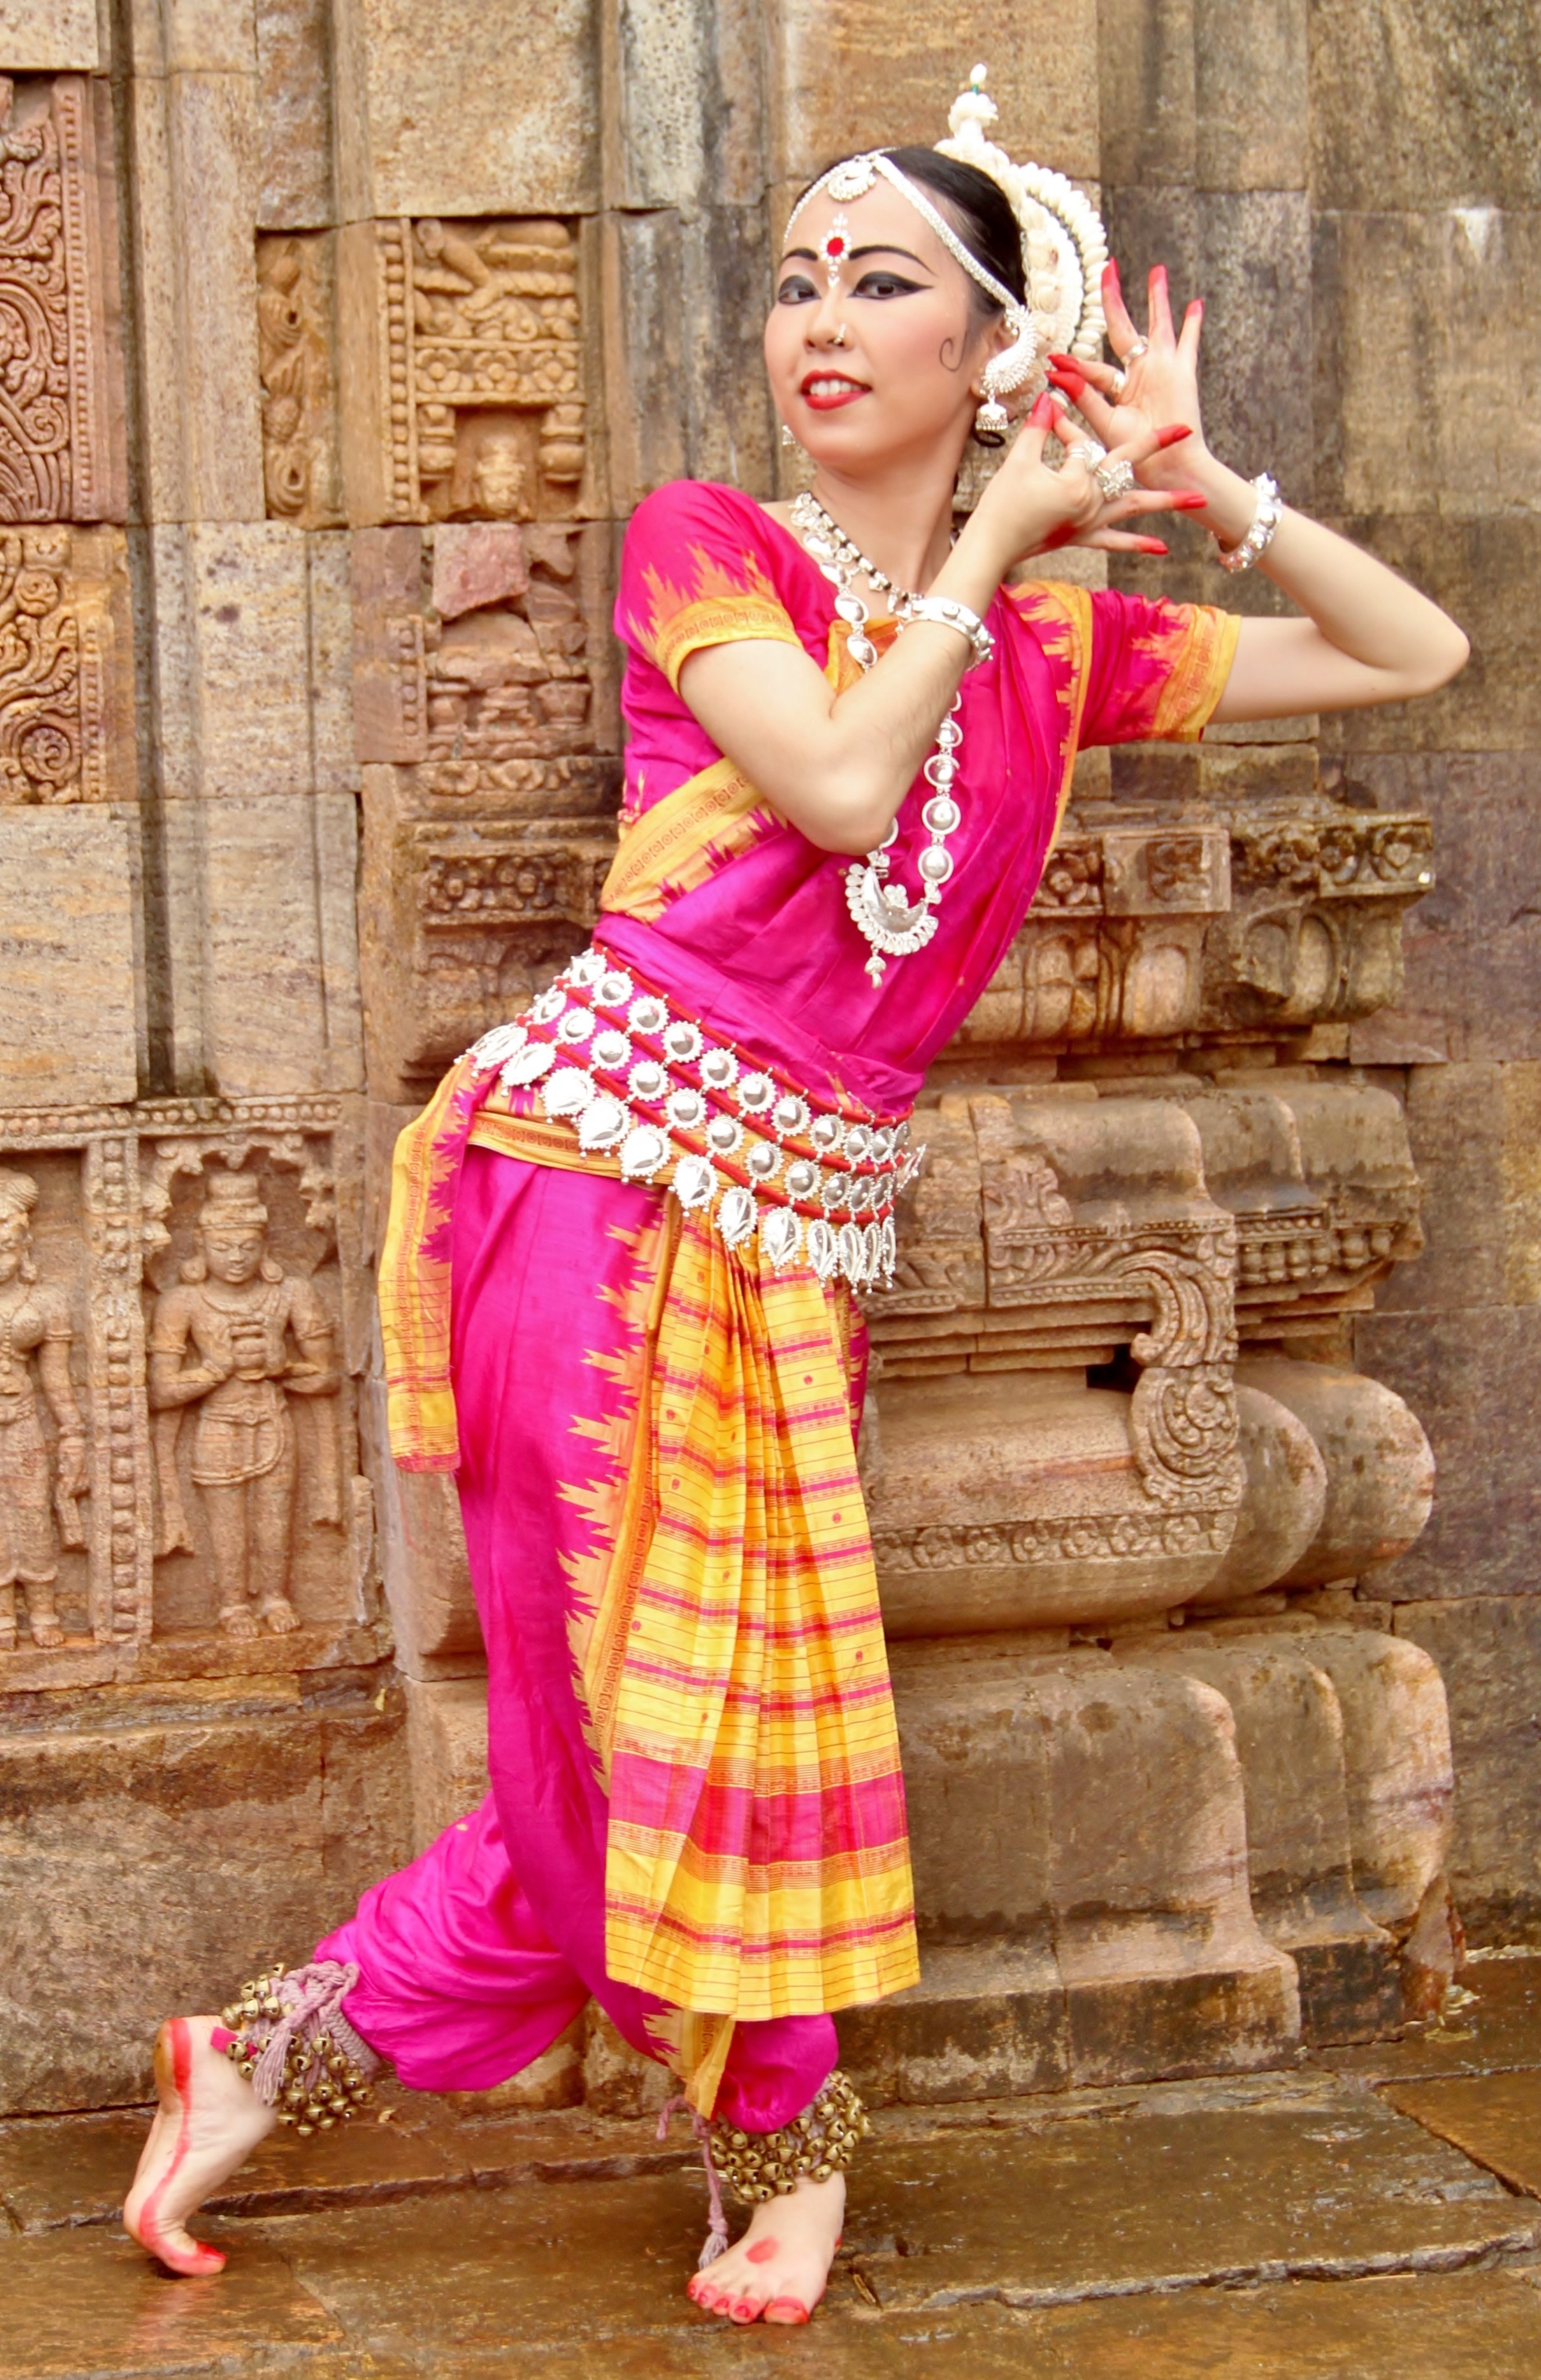 インド舞踊エクササイズ体験